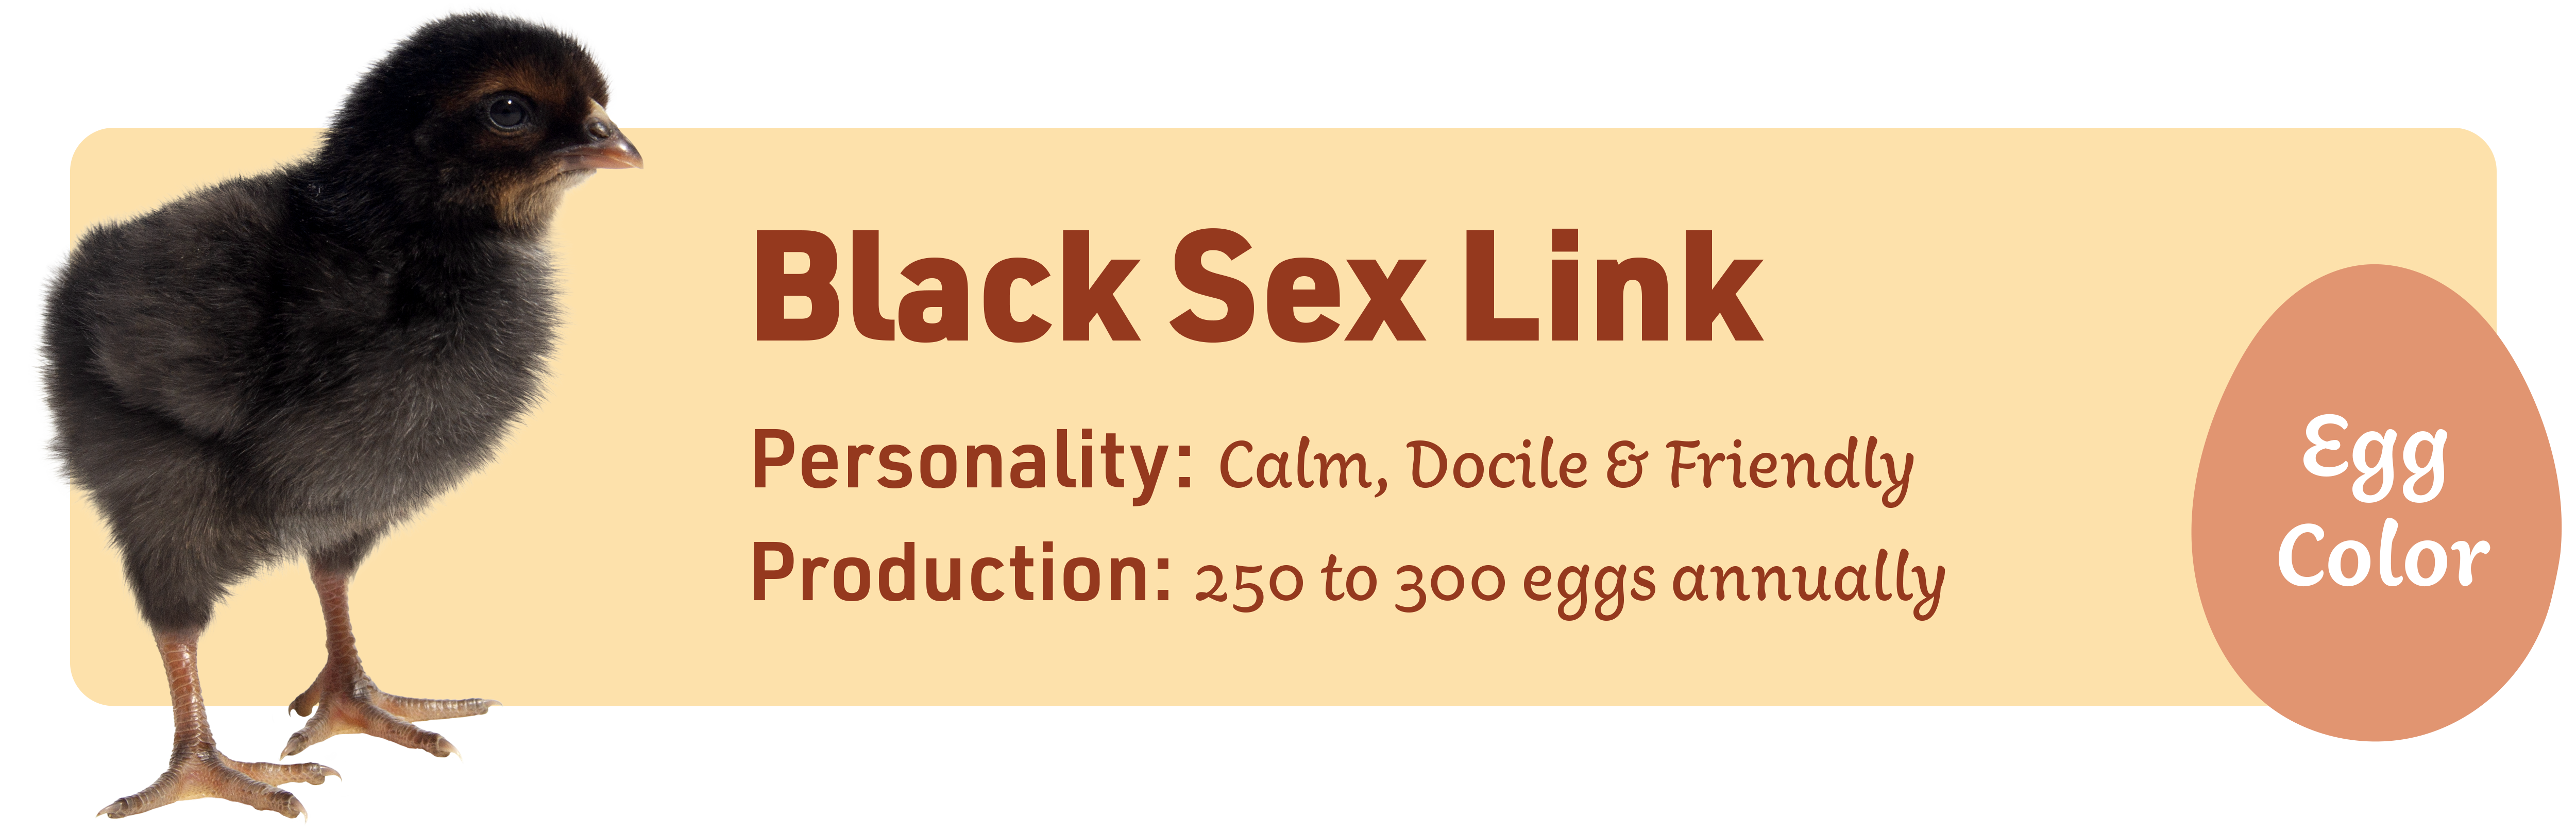 Black Sex Link_Popular_chicks_v1-3